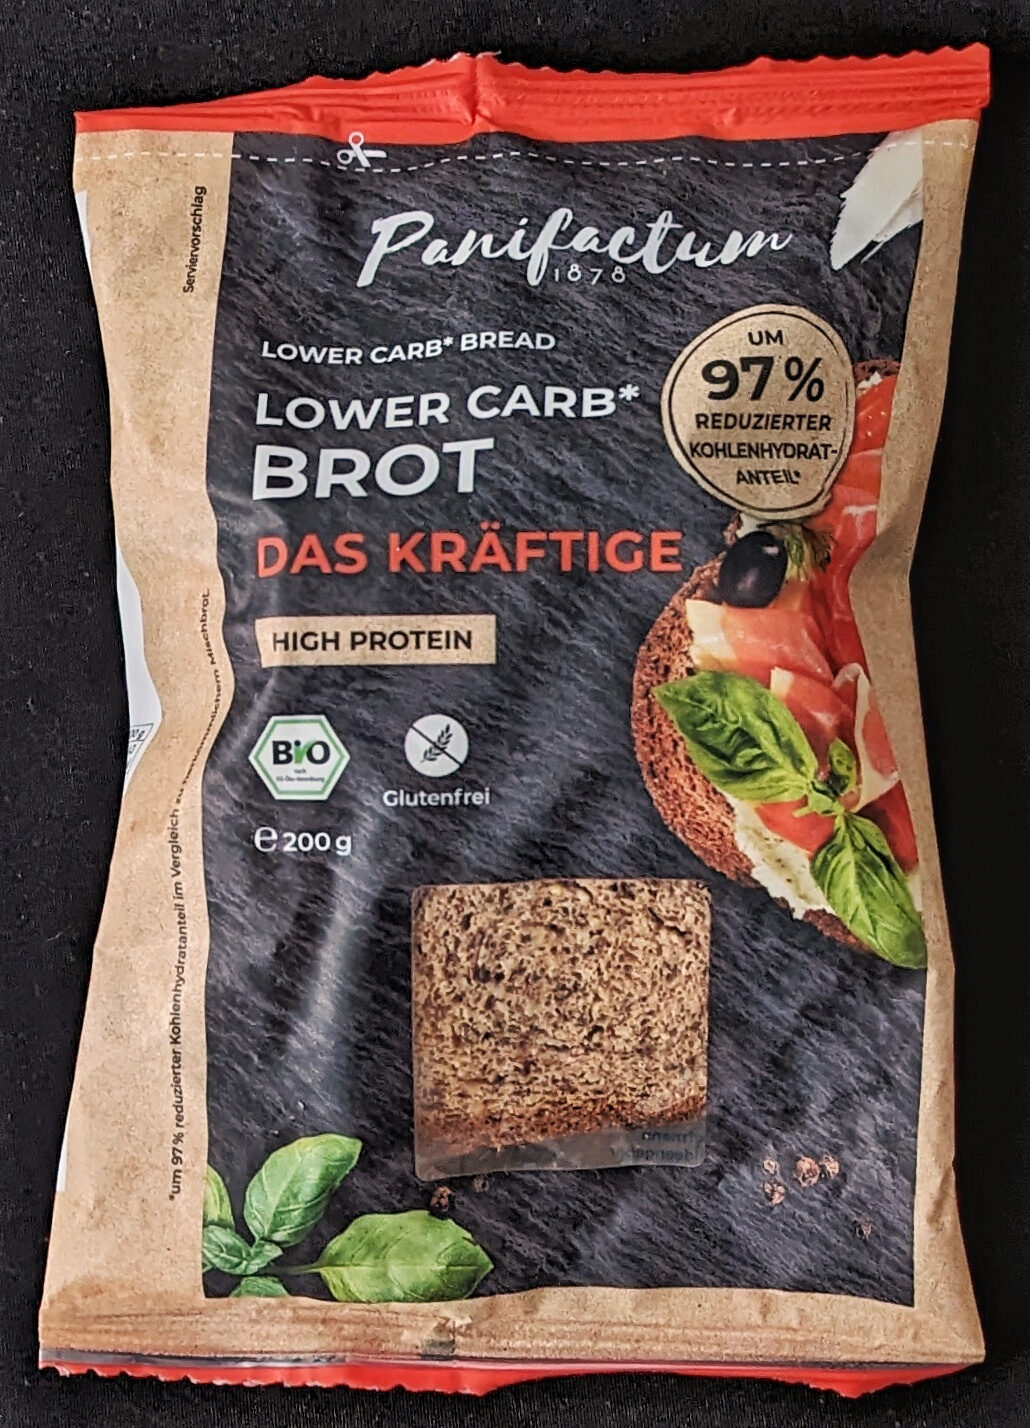 Lower Carb Brot, Das Kräftige - Produkt